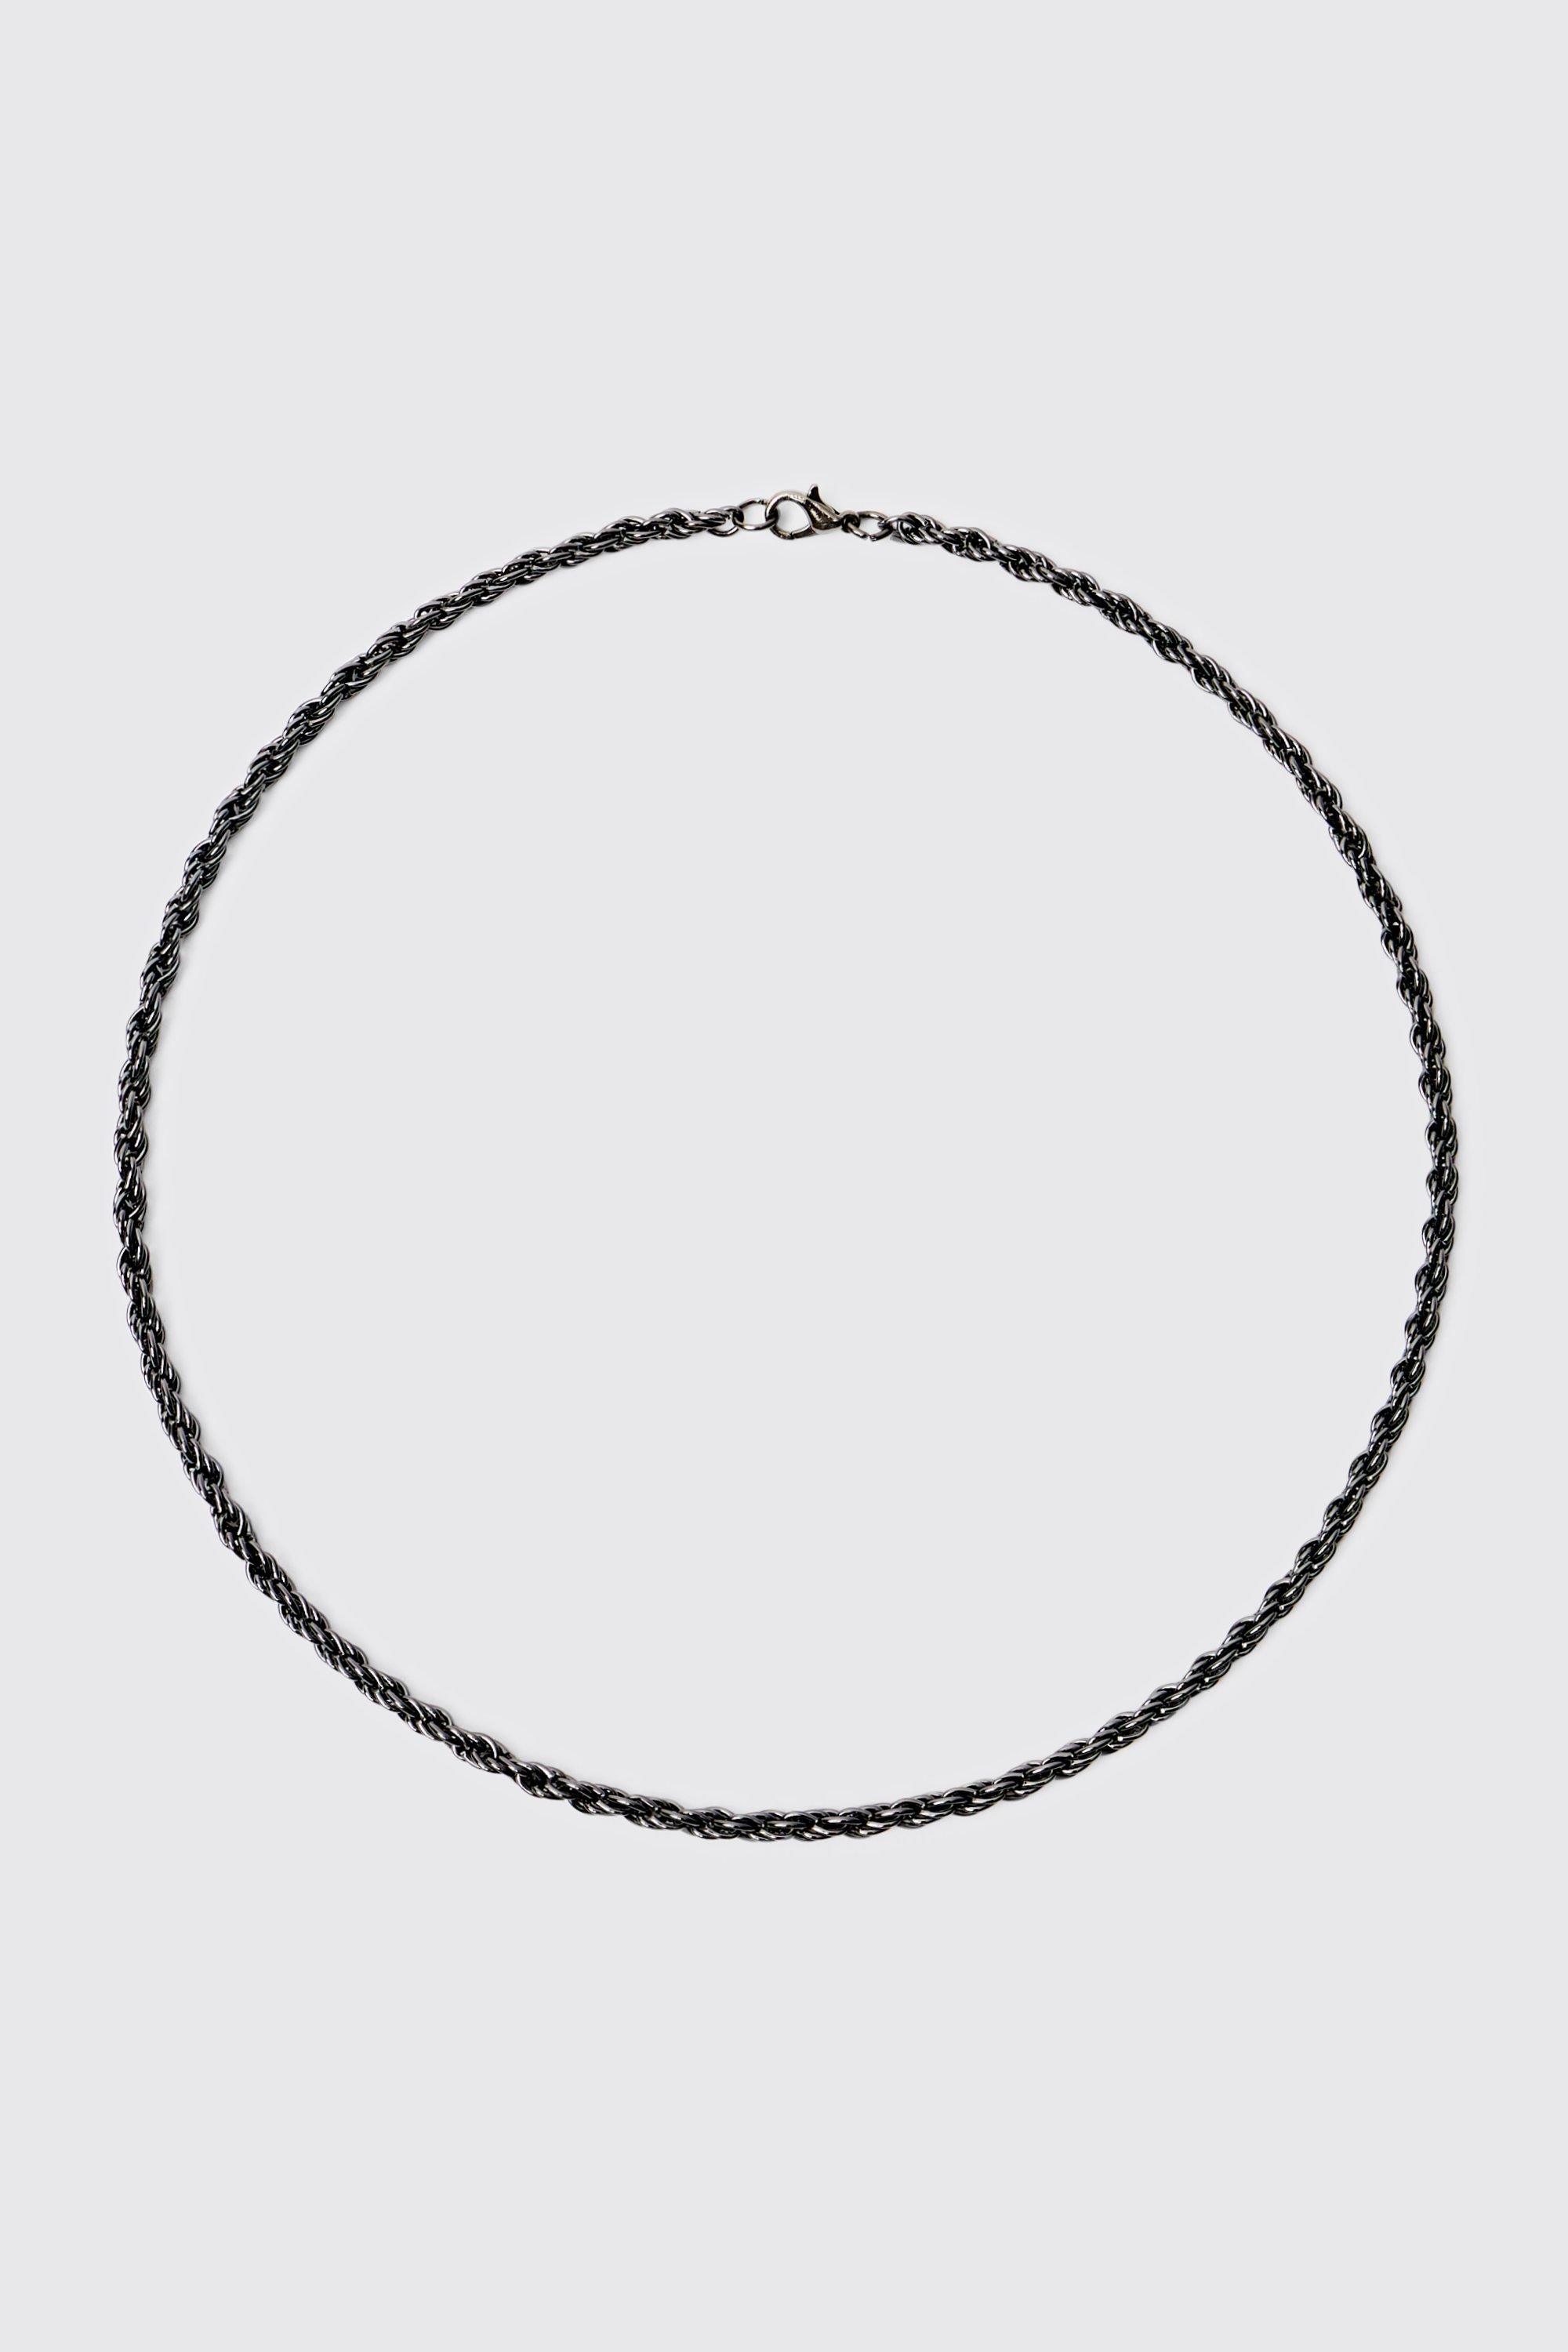 collier à chaîne style corde homme - argent - one size, argent